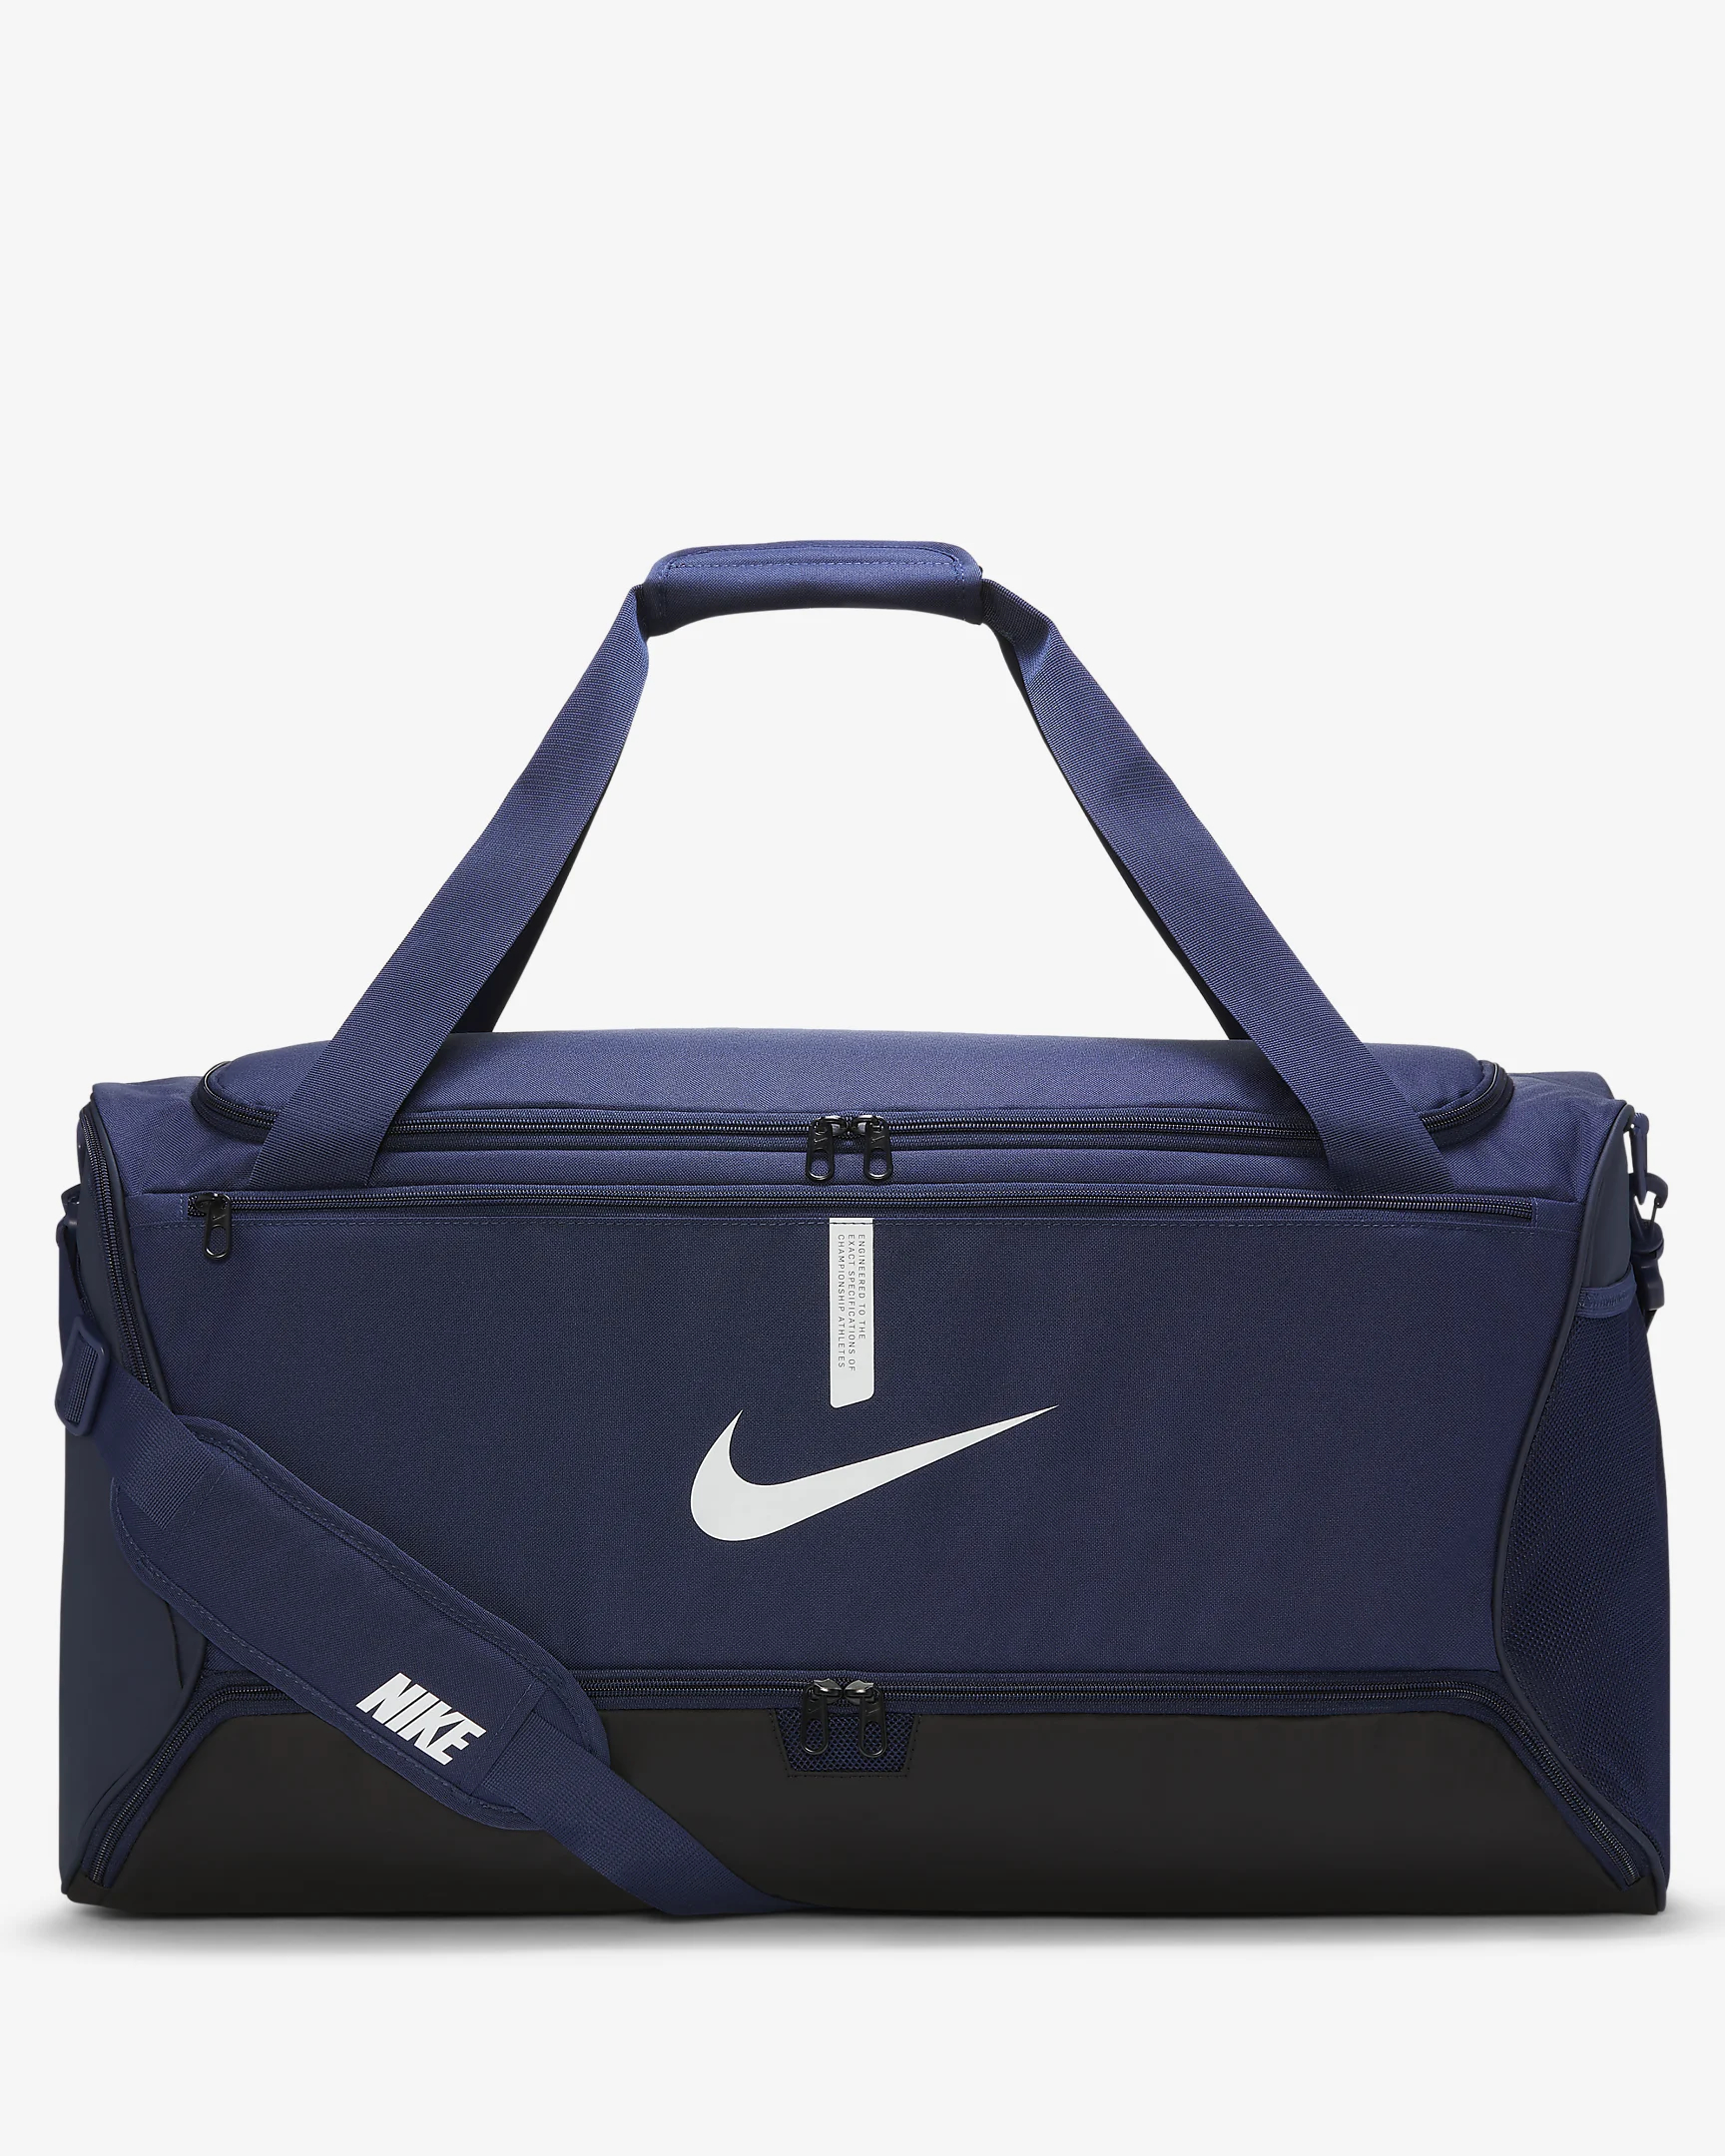 Сумка спортивная Nike размер L, темно-синяя, CU8089-410